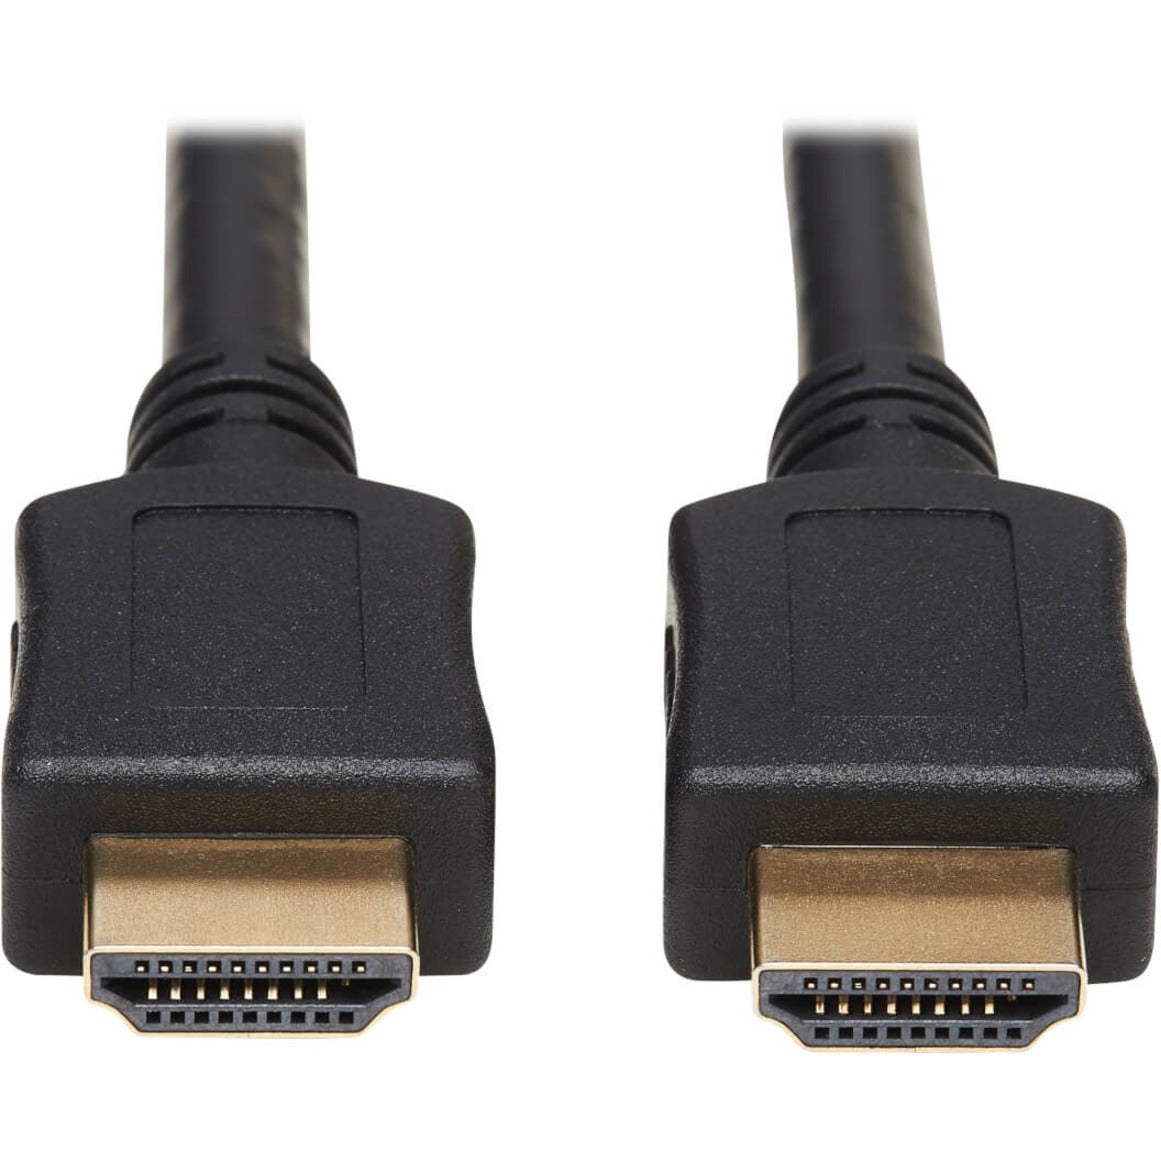 Tripp Lite P782-010-HA HDMI KVM Cable Kit - 4K HDMI, USB 2.0, 3.5 mm Audio, 10 ft., Black